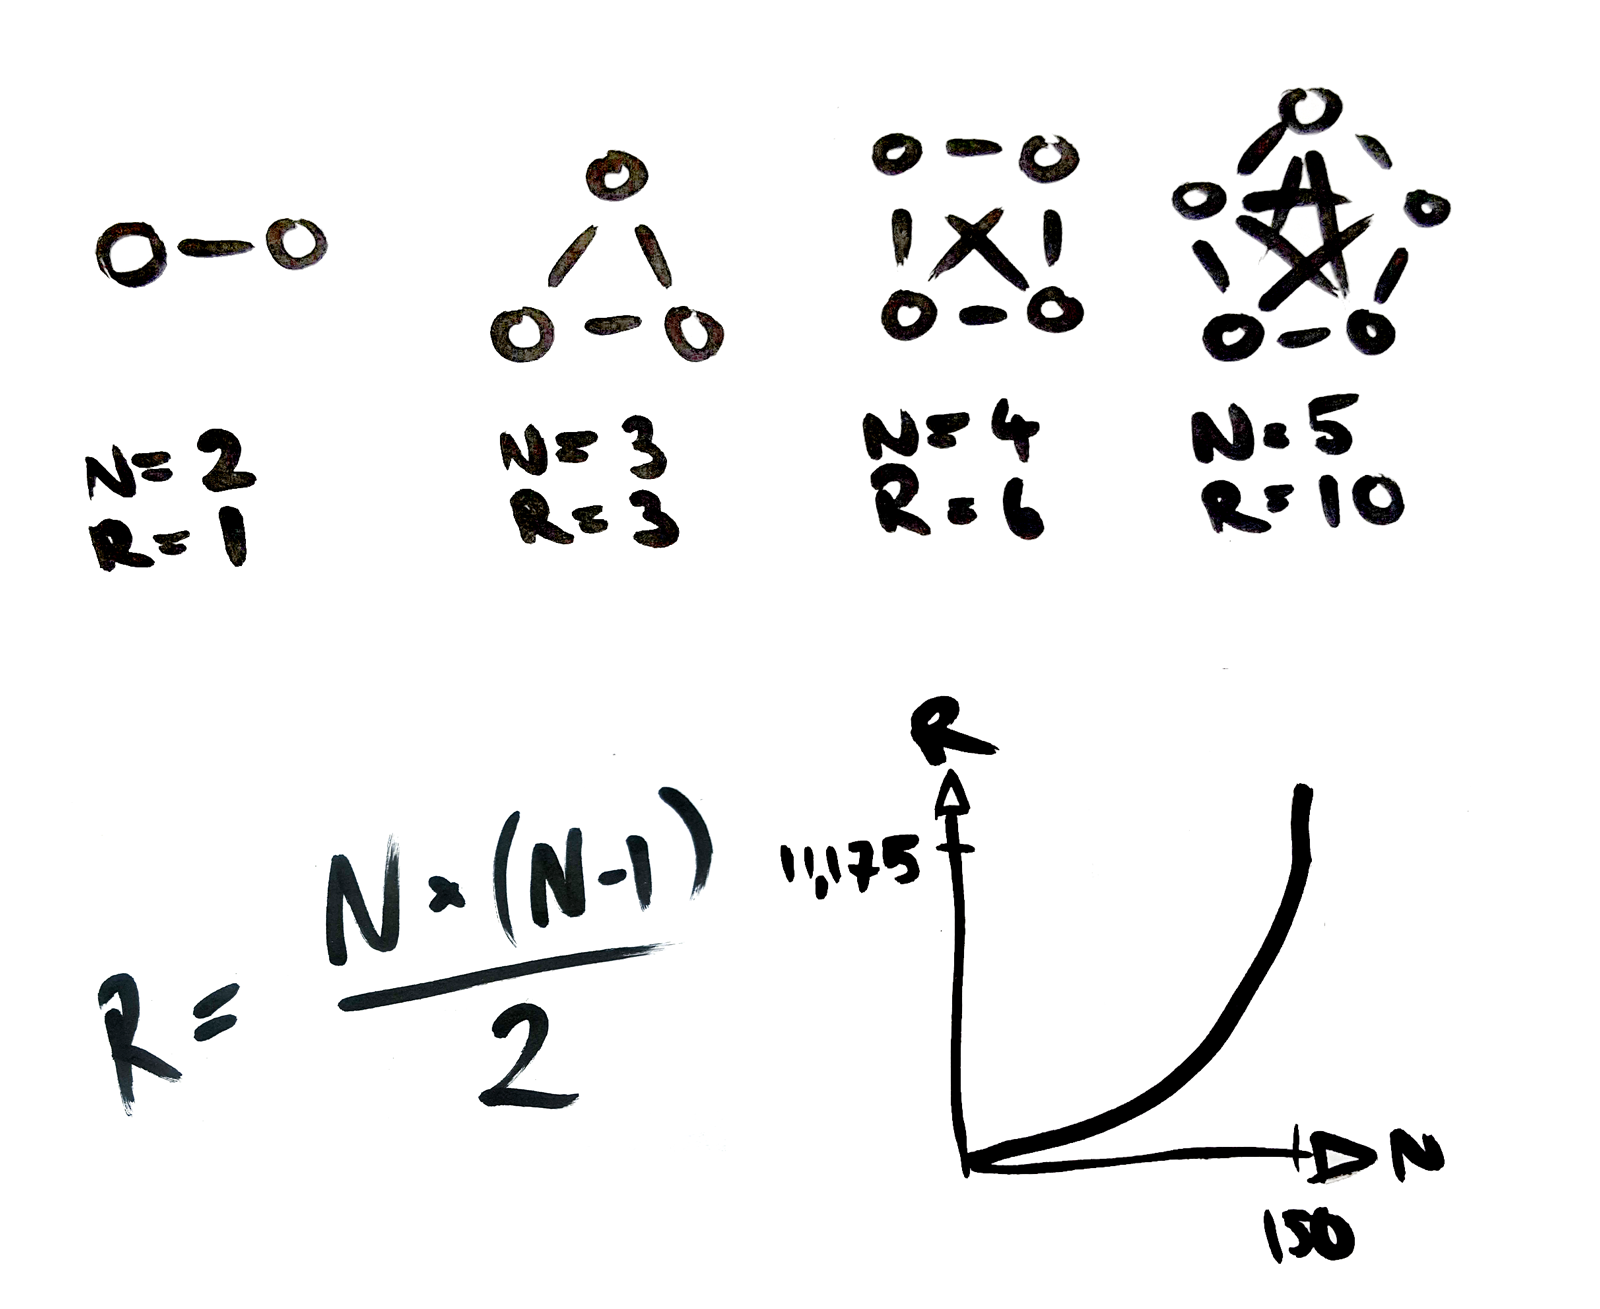 The number of relationships R in a group of N members: R = (N x N-1) ÷ 2